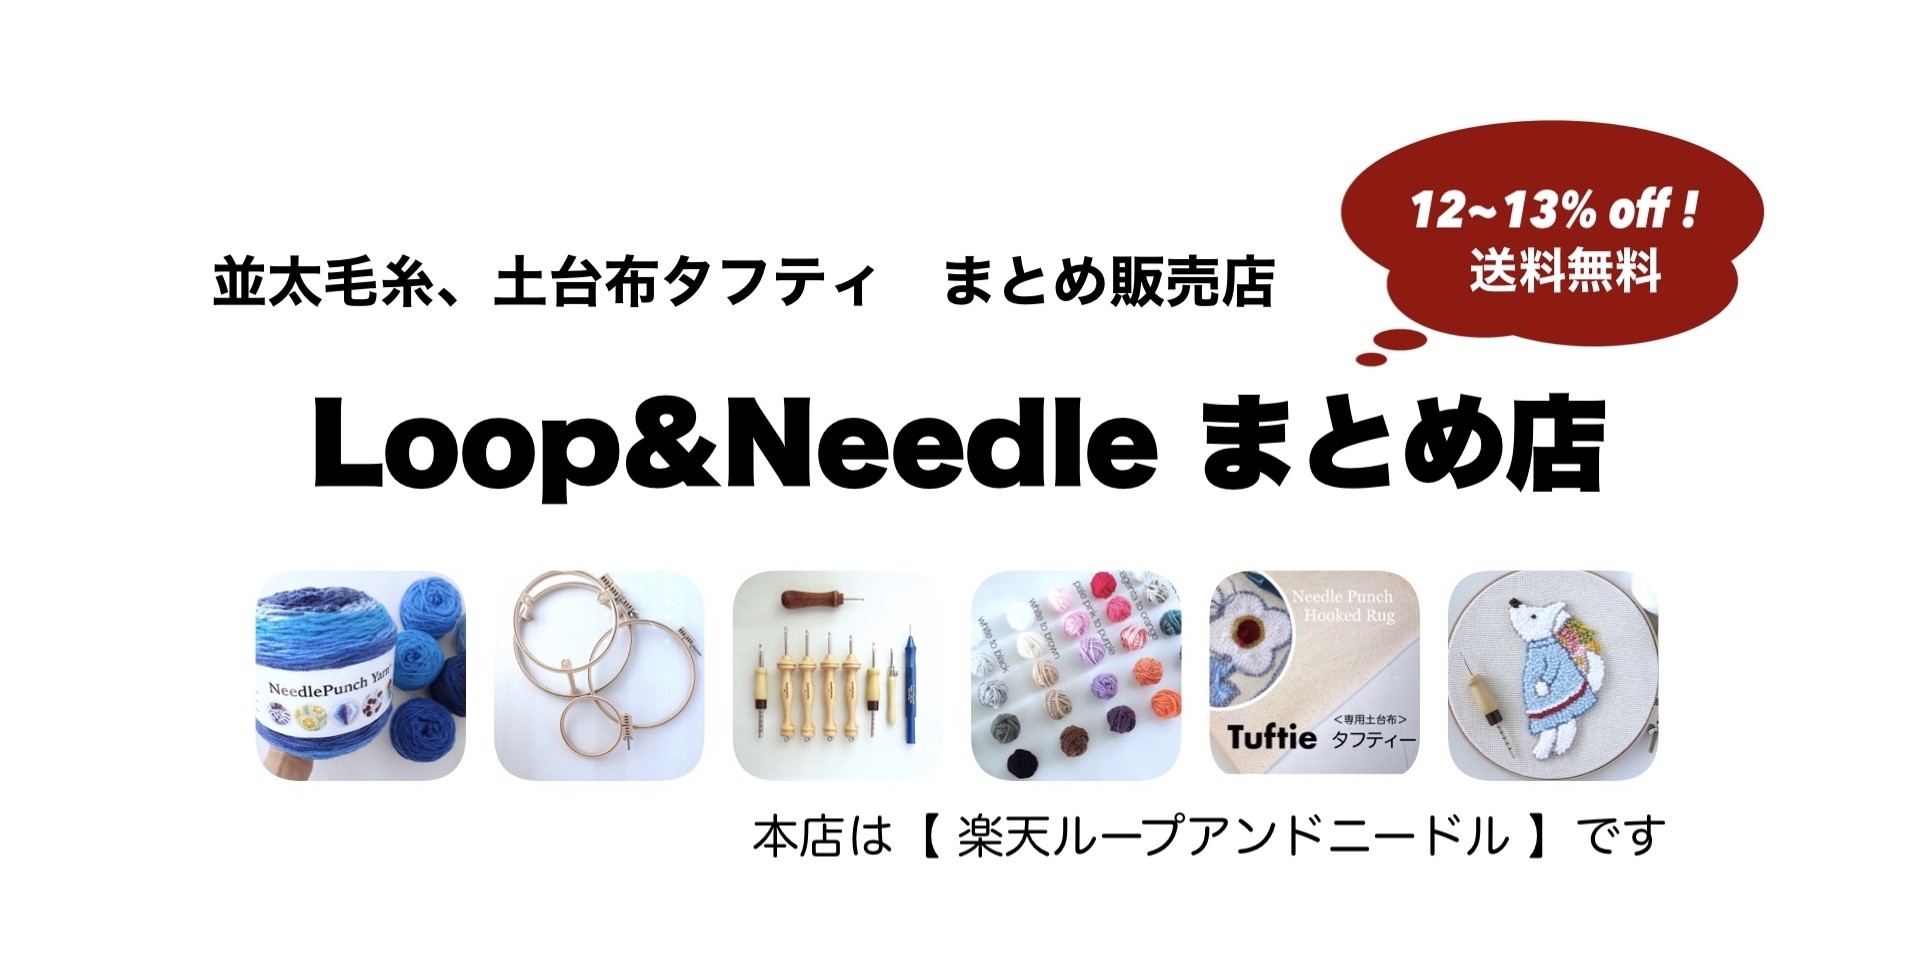 パンチニードル専門店 Loop Needle まとめ販売店